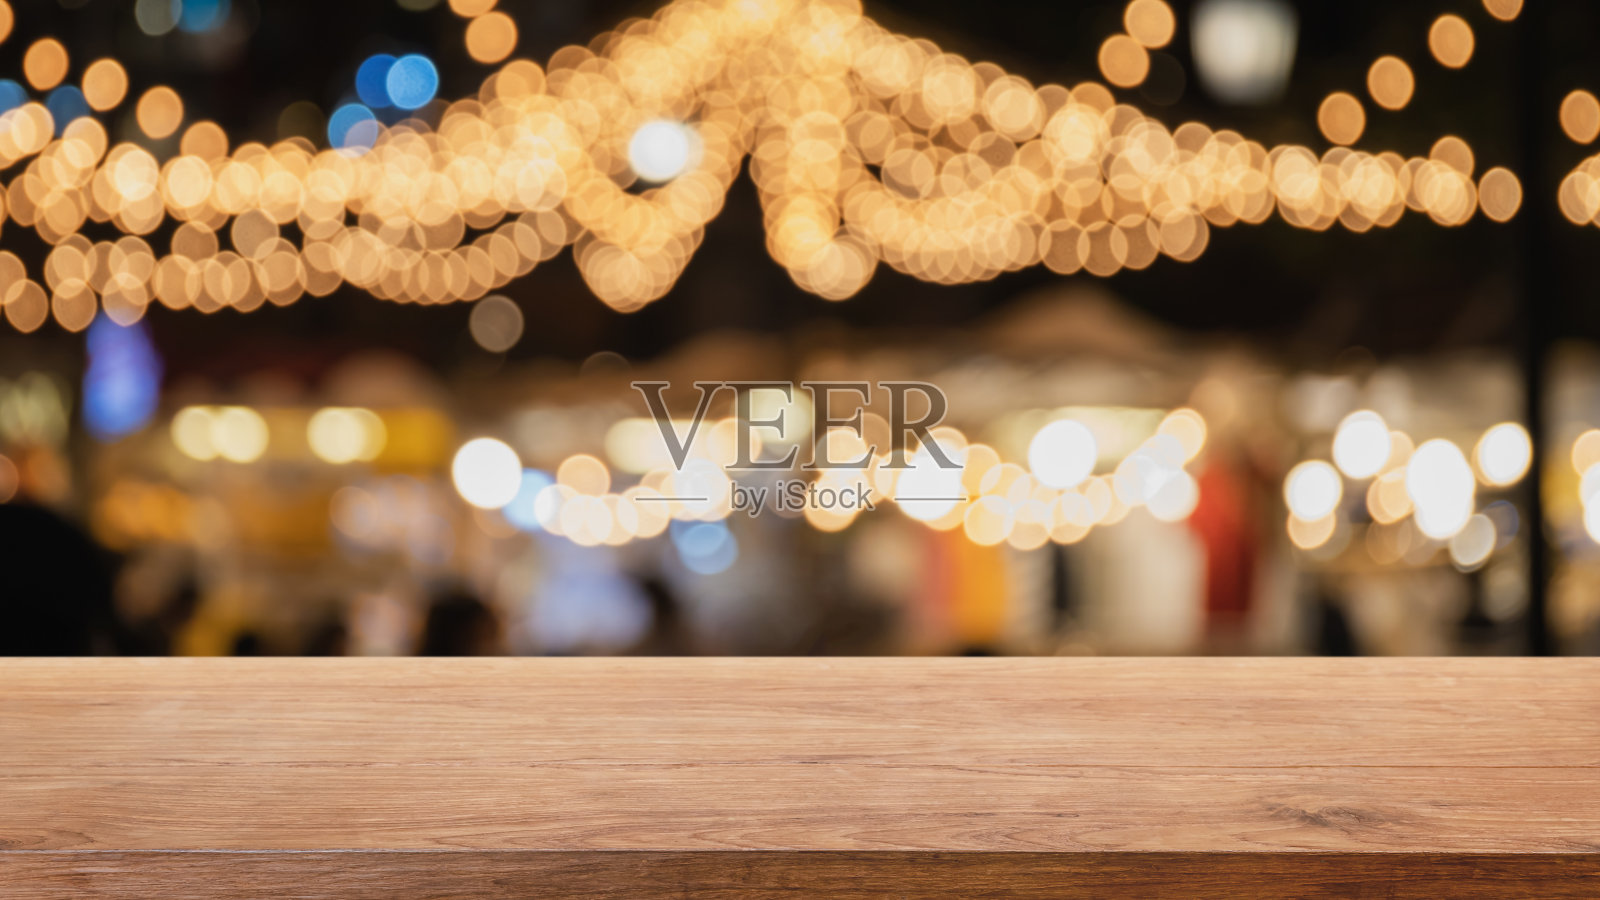 空的木头桌面上抽象模糊的餐厅和夜总会派对灯光背景-可以用来展示或蒙太奇您的产品照片摄影图片